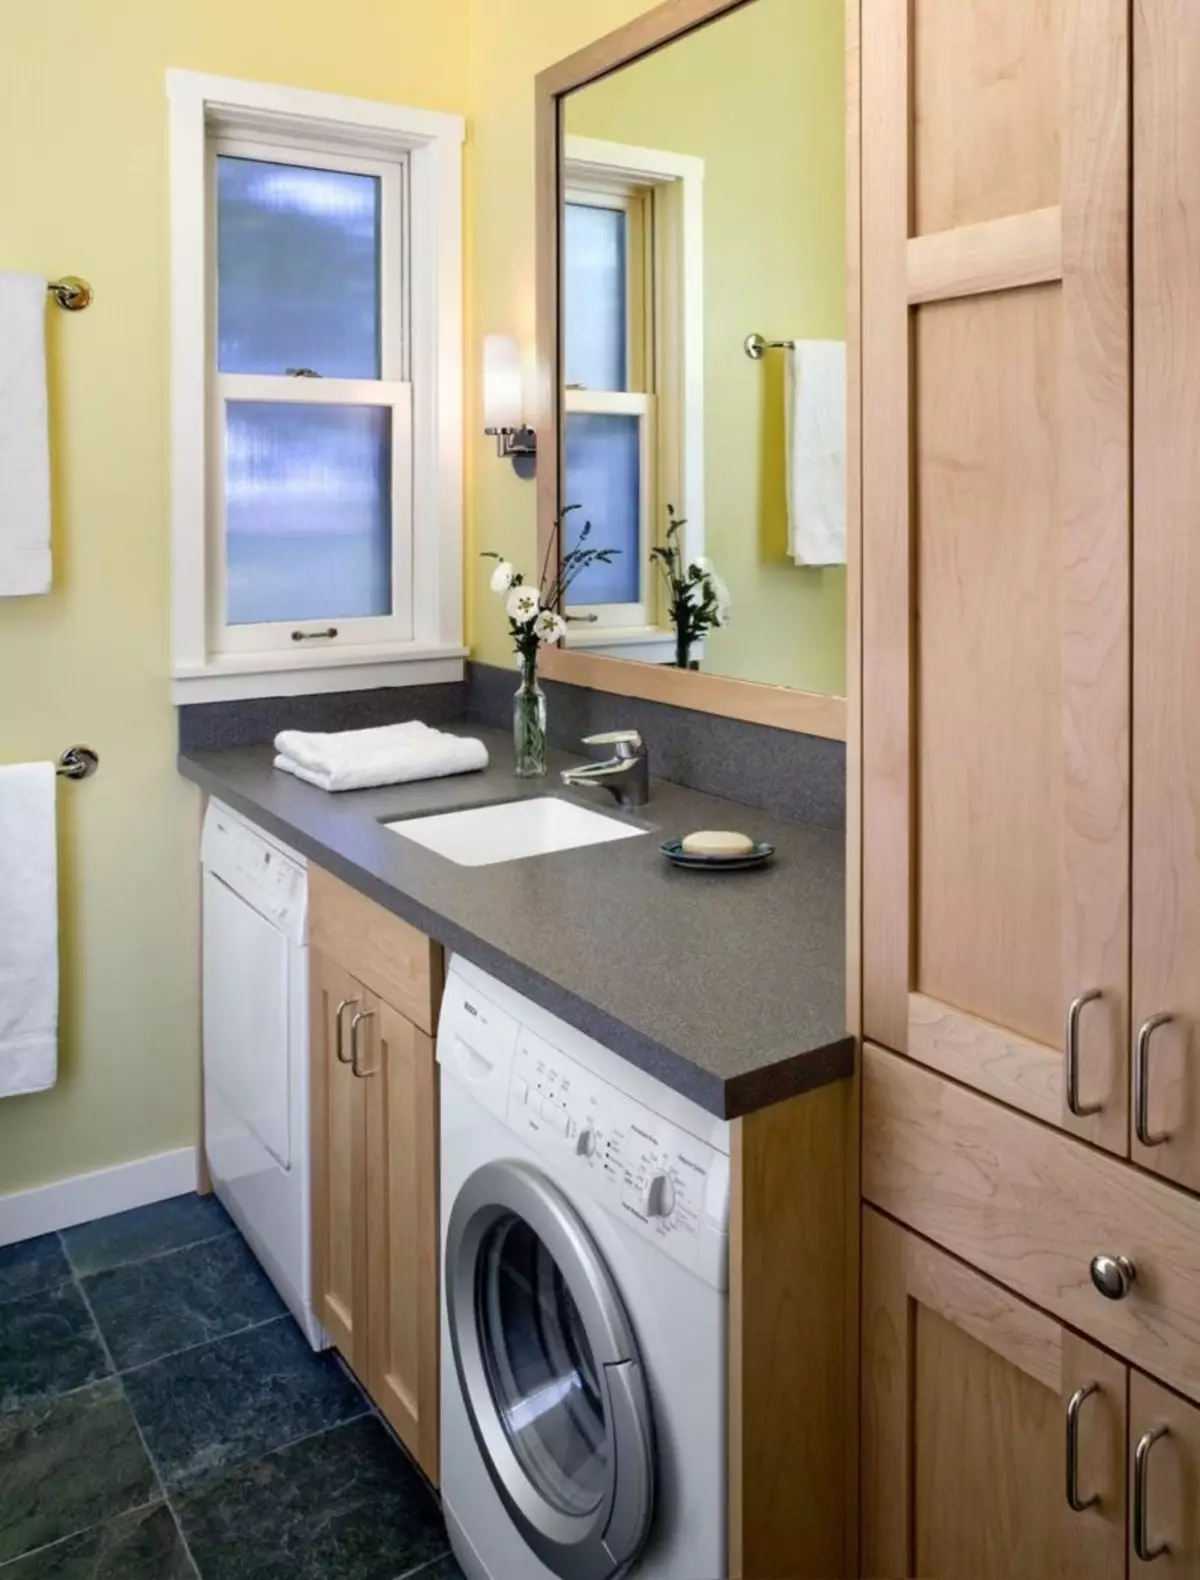 Mesin cuci di kamar mandi (101 poto): fitur desain interior tina interior tina kamar mandi sareng mesin cuci dina gaya modern sareng gaya sanés 10413_16